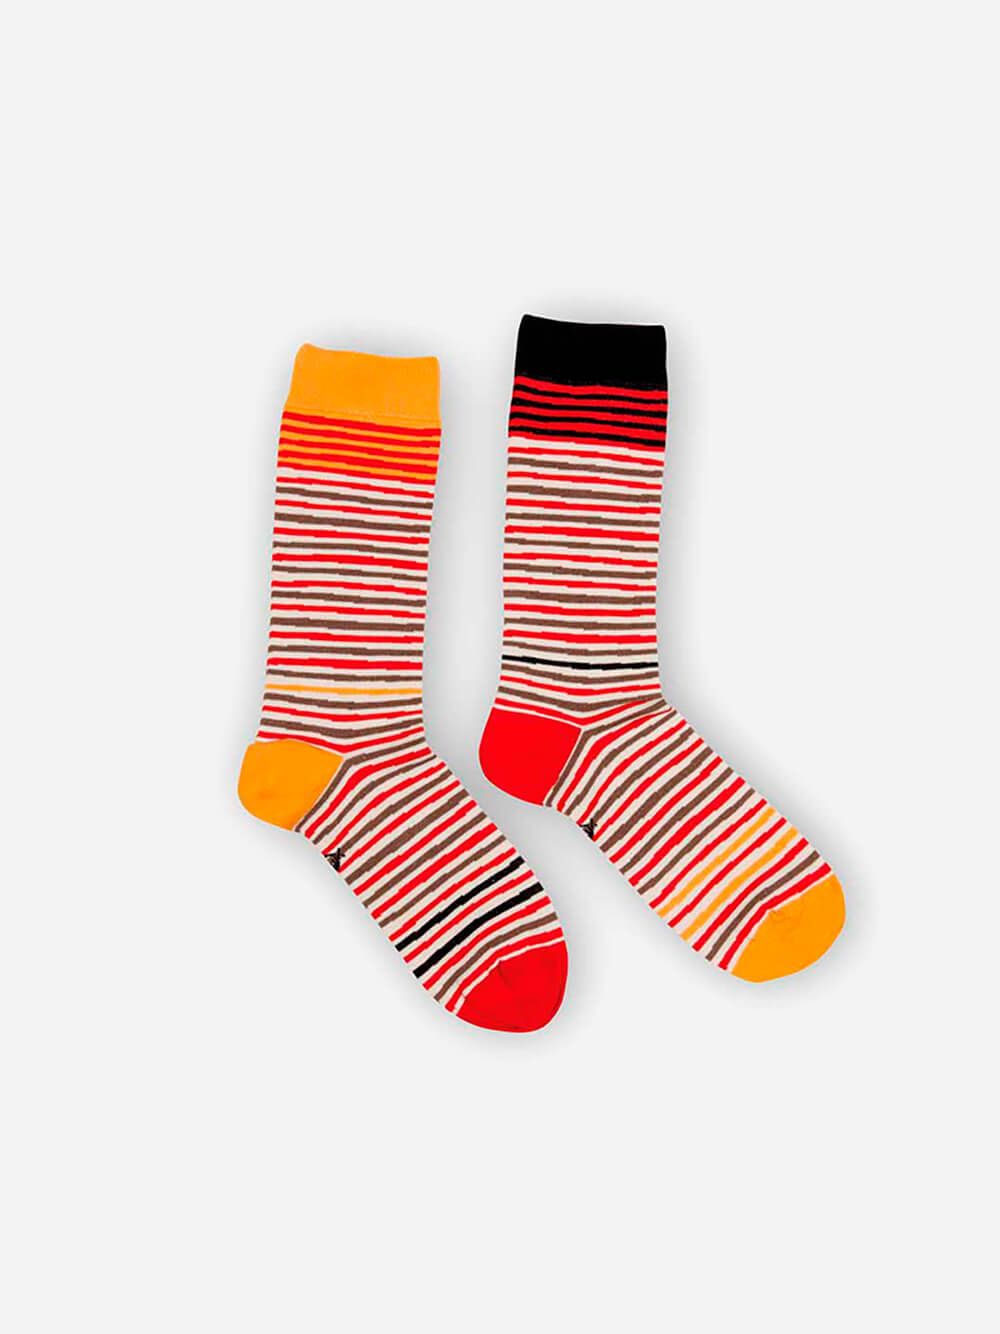 Wally Stripes Socks | Lolo Carolo